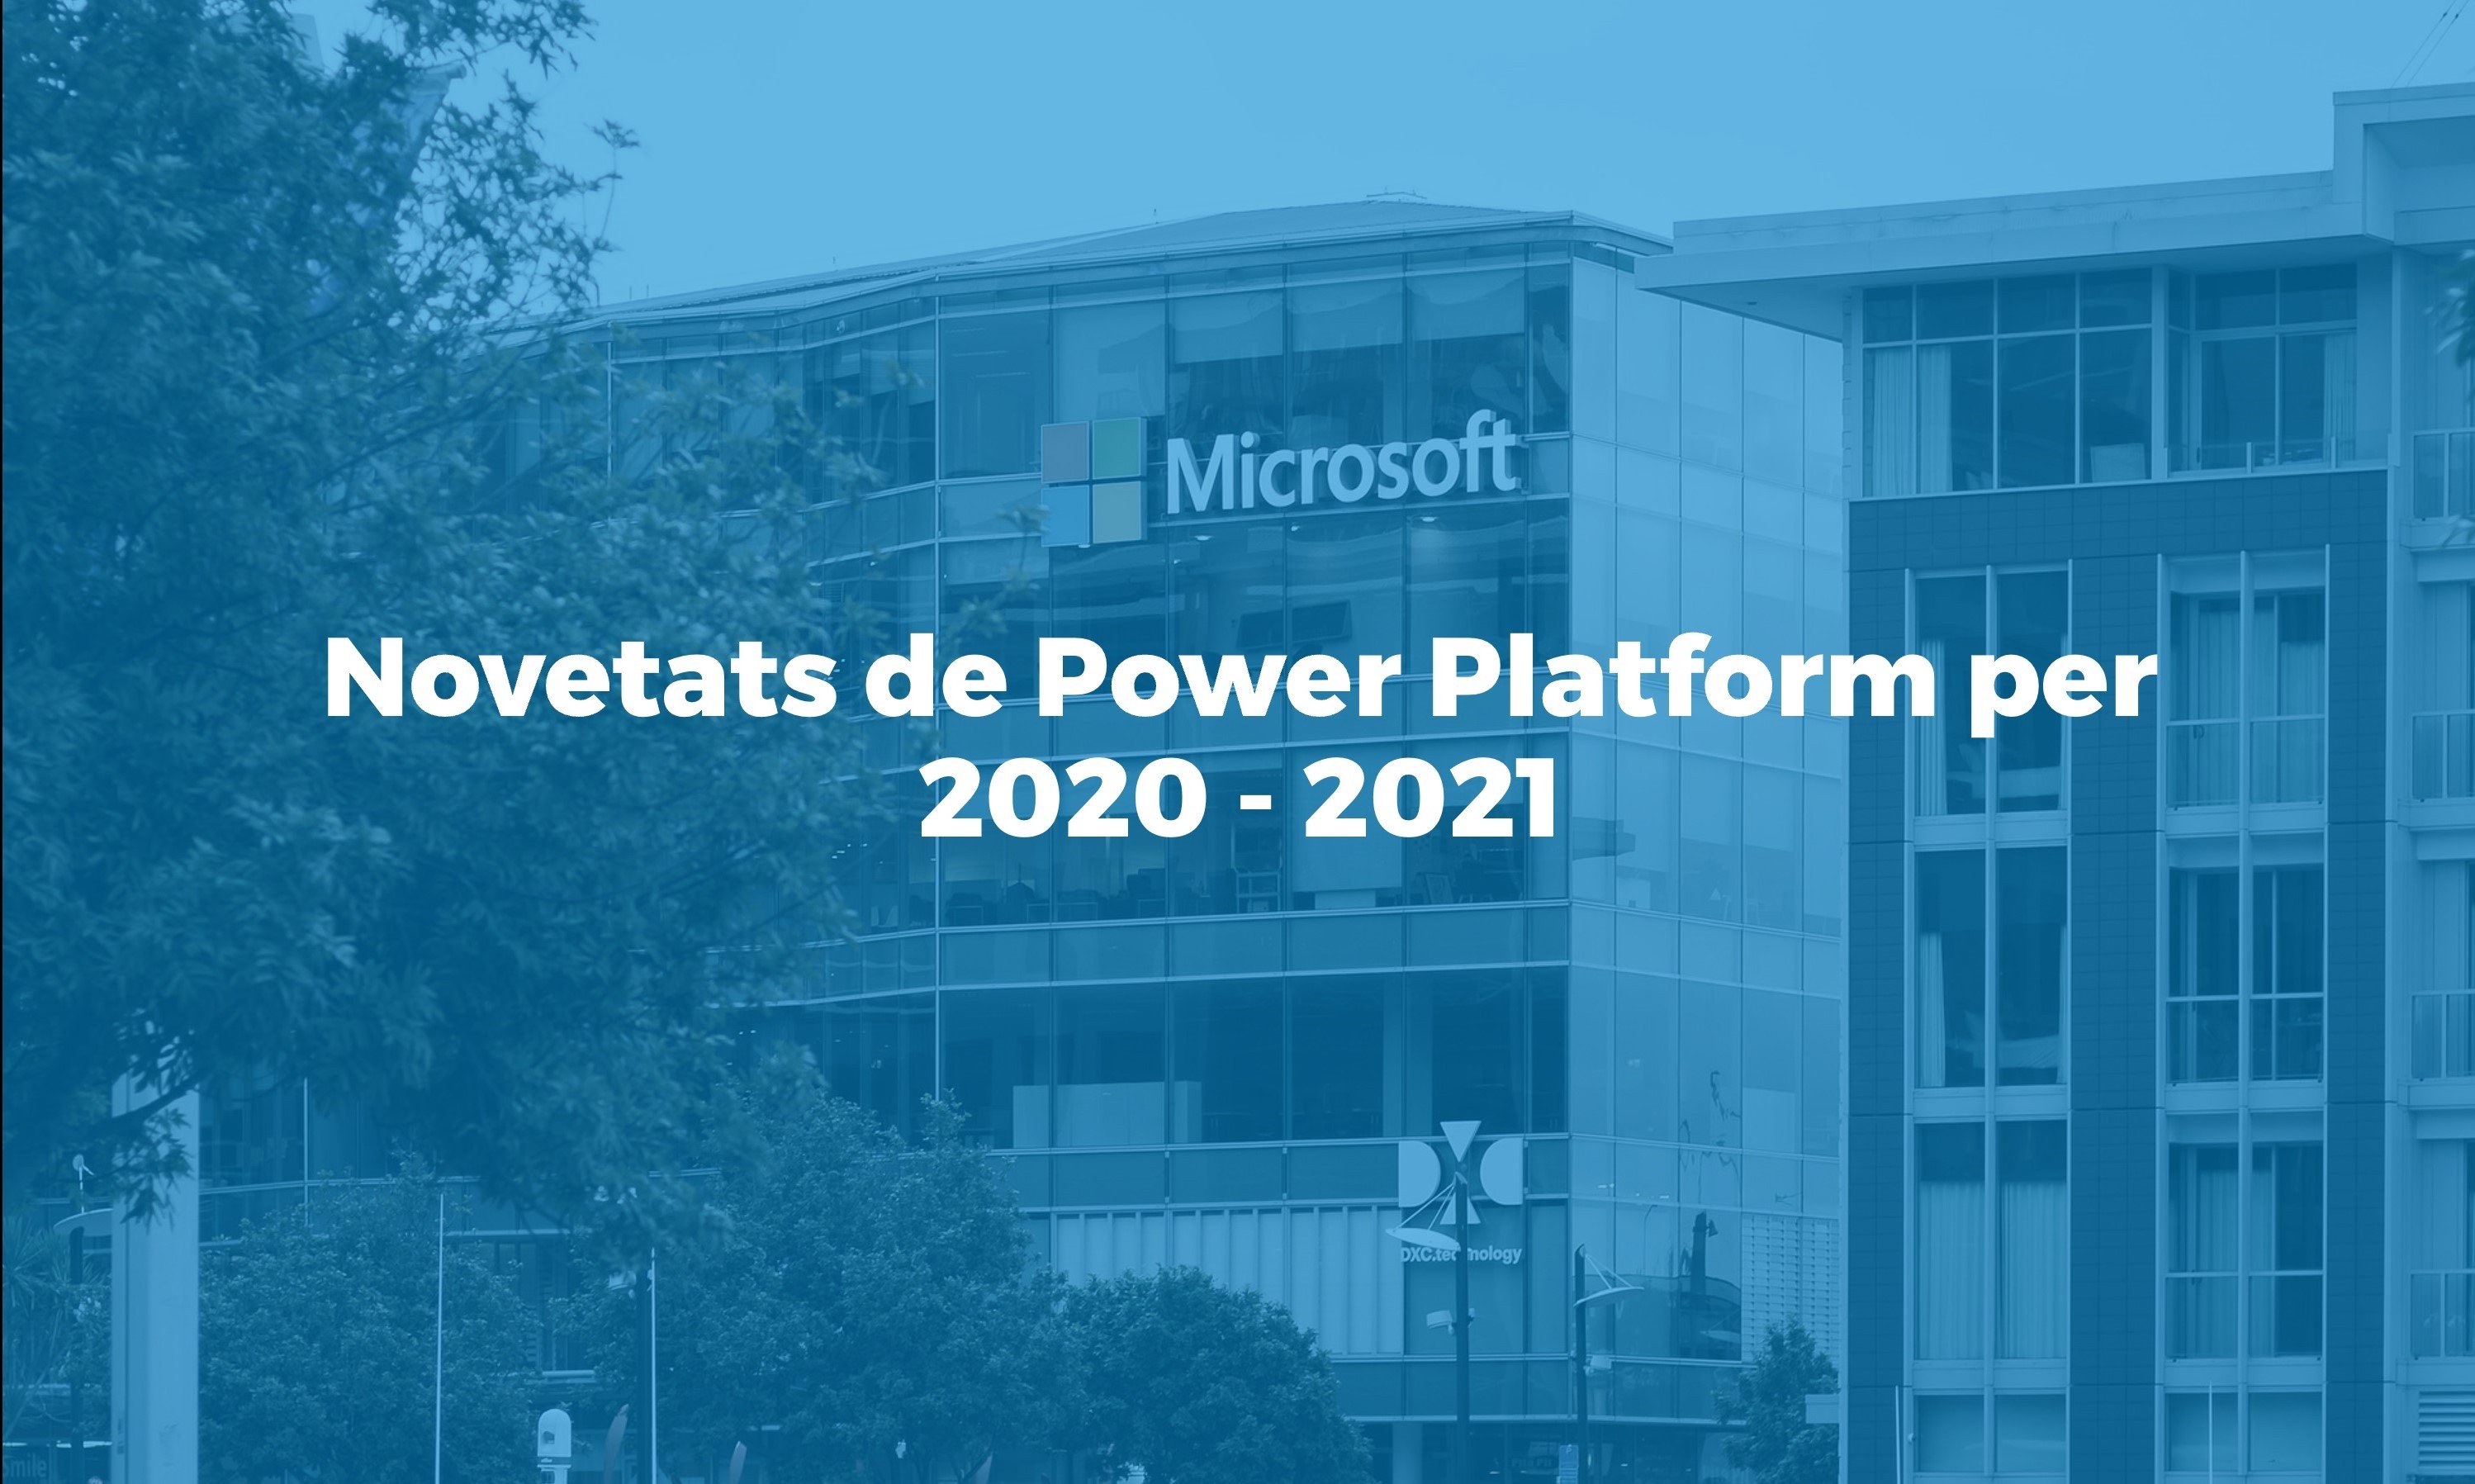 Microsoft anuncia novetats a Power Platform previstes per 2020 2021